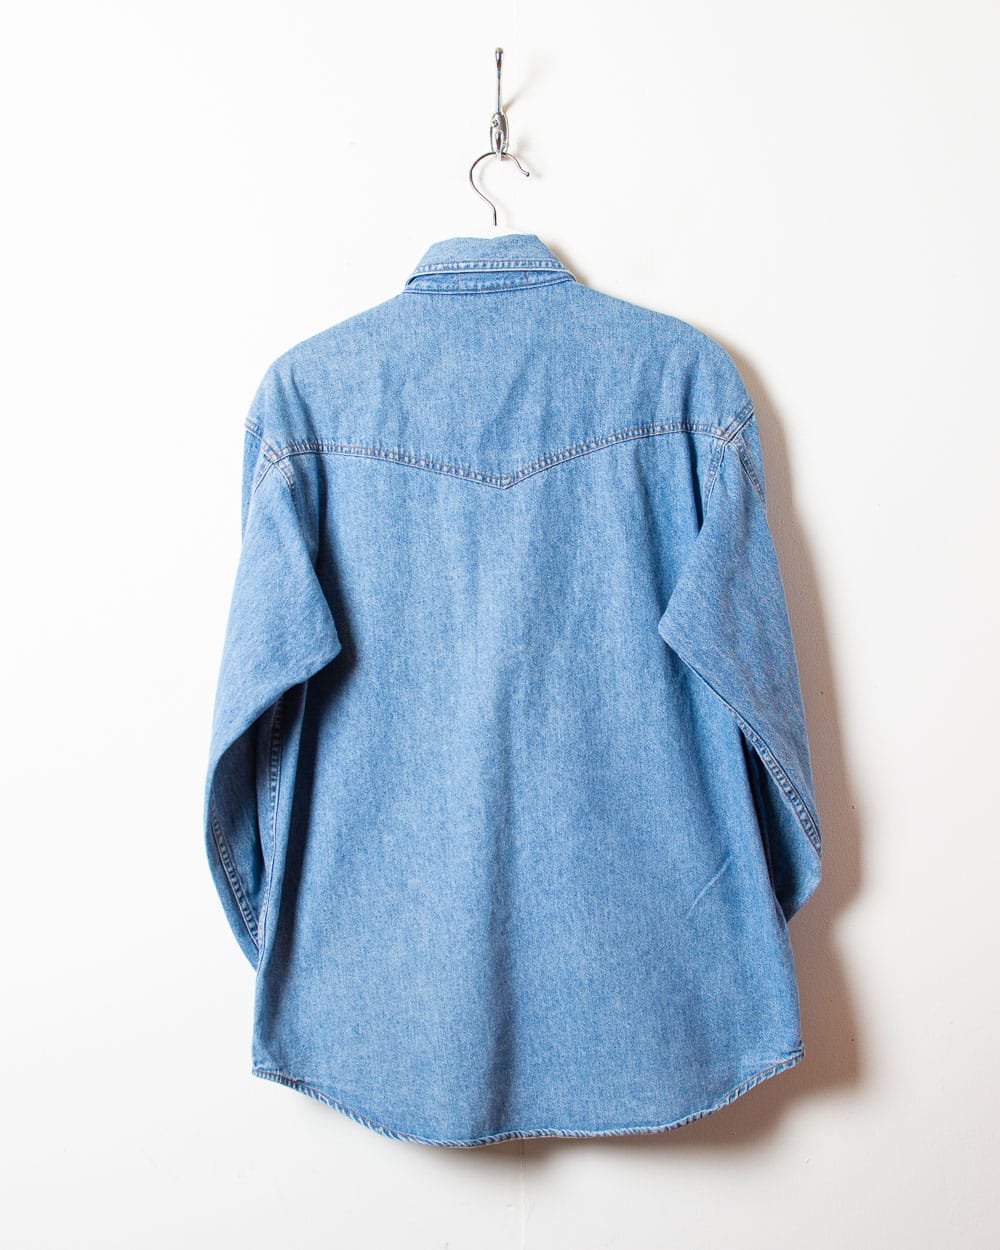 Blue Levi's Denim Shirt - Medium